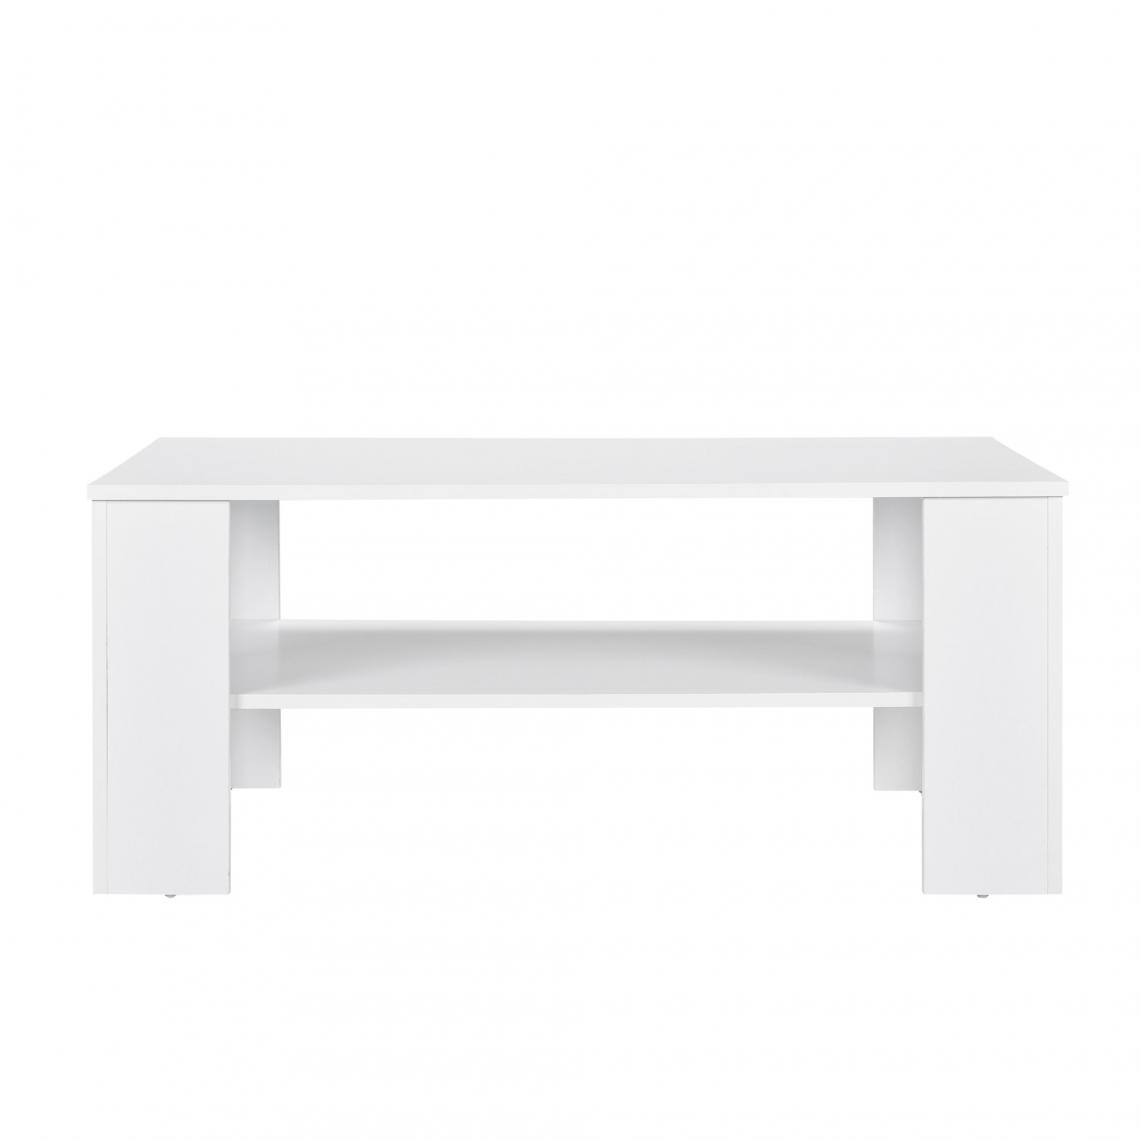 Helloshop26 - Table basse de salon salle de séjour table d'appoint avec rangement 100 x 60cm blanc 03_0004299 - Tables basses